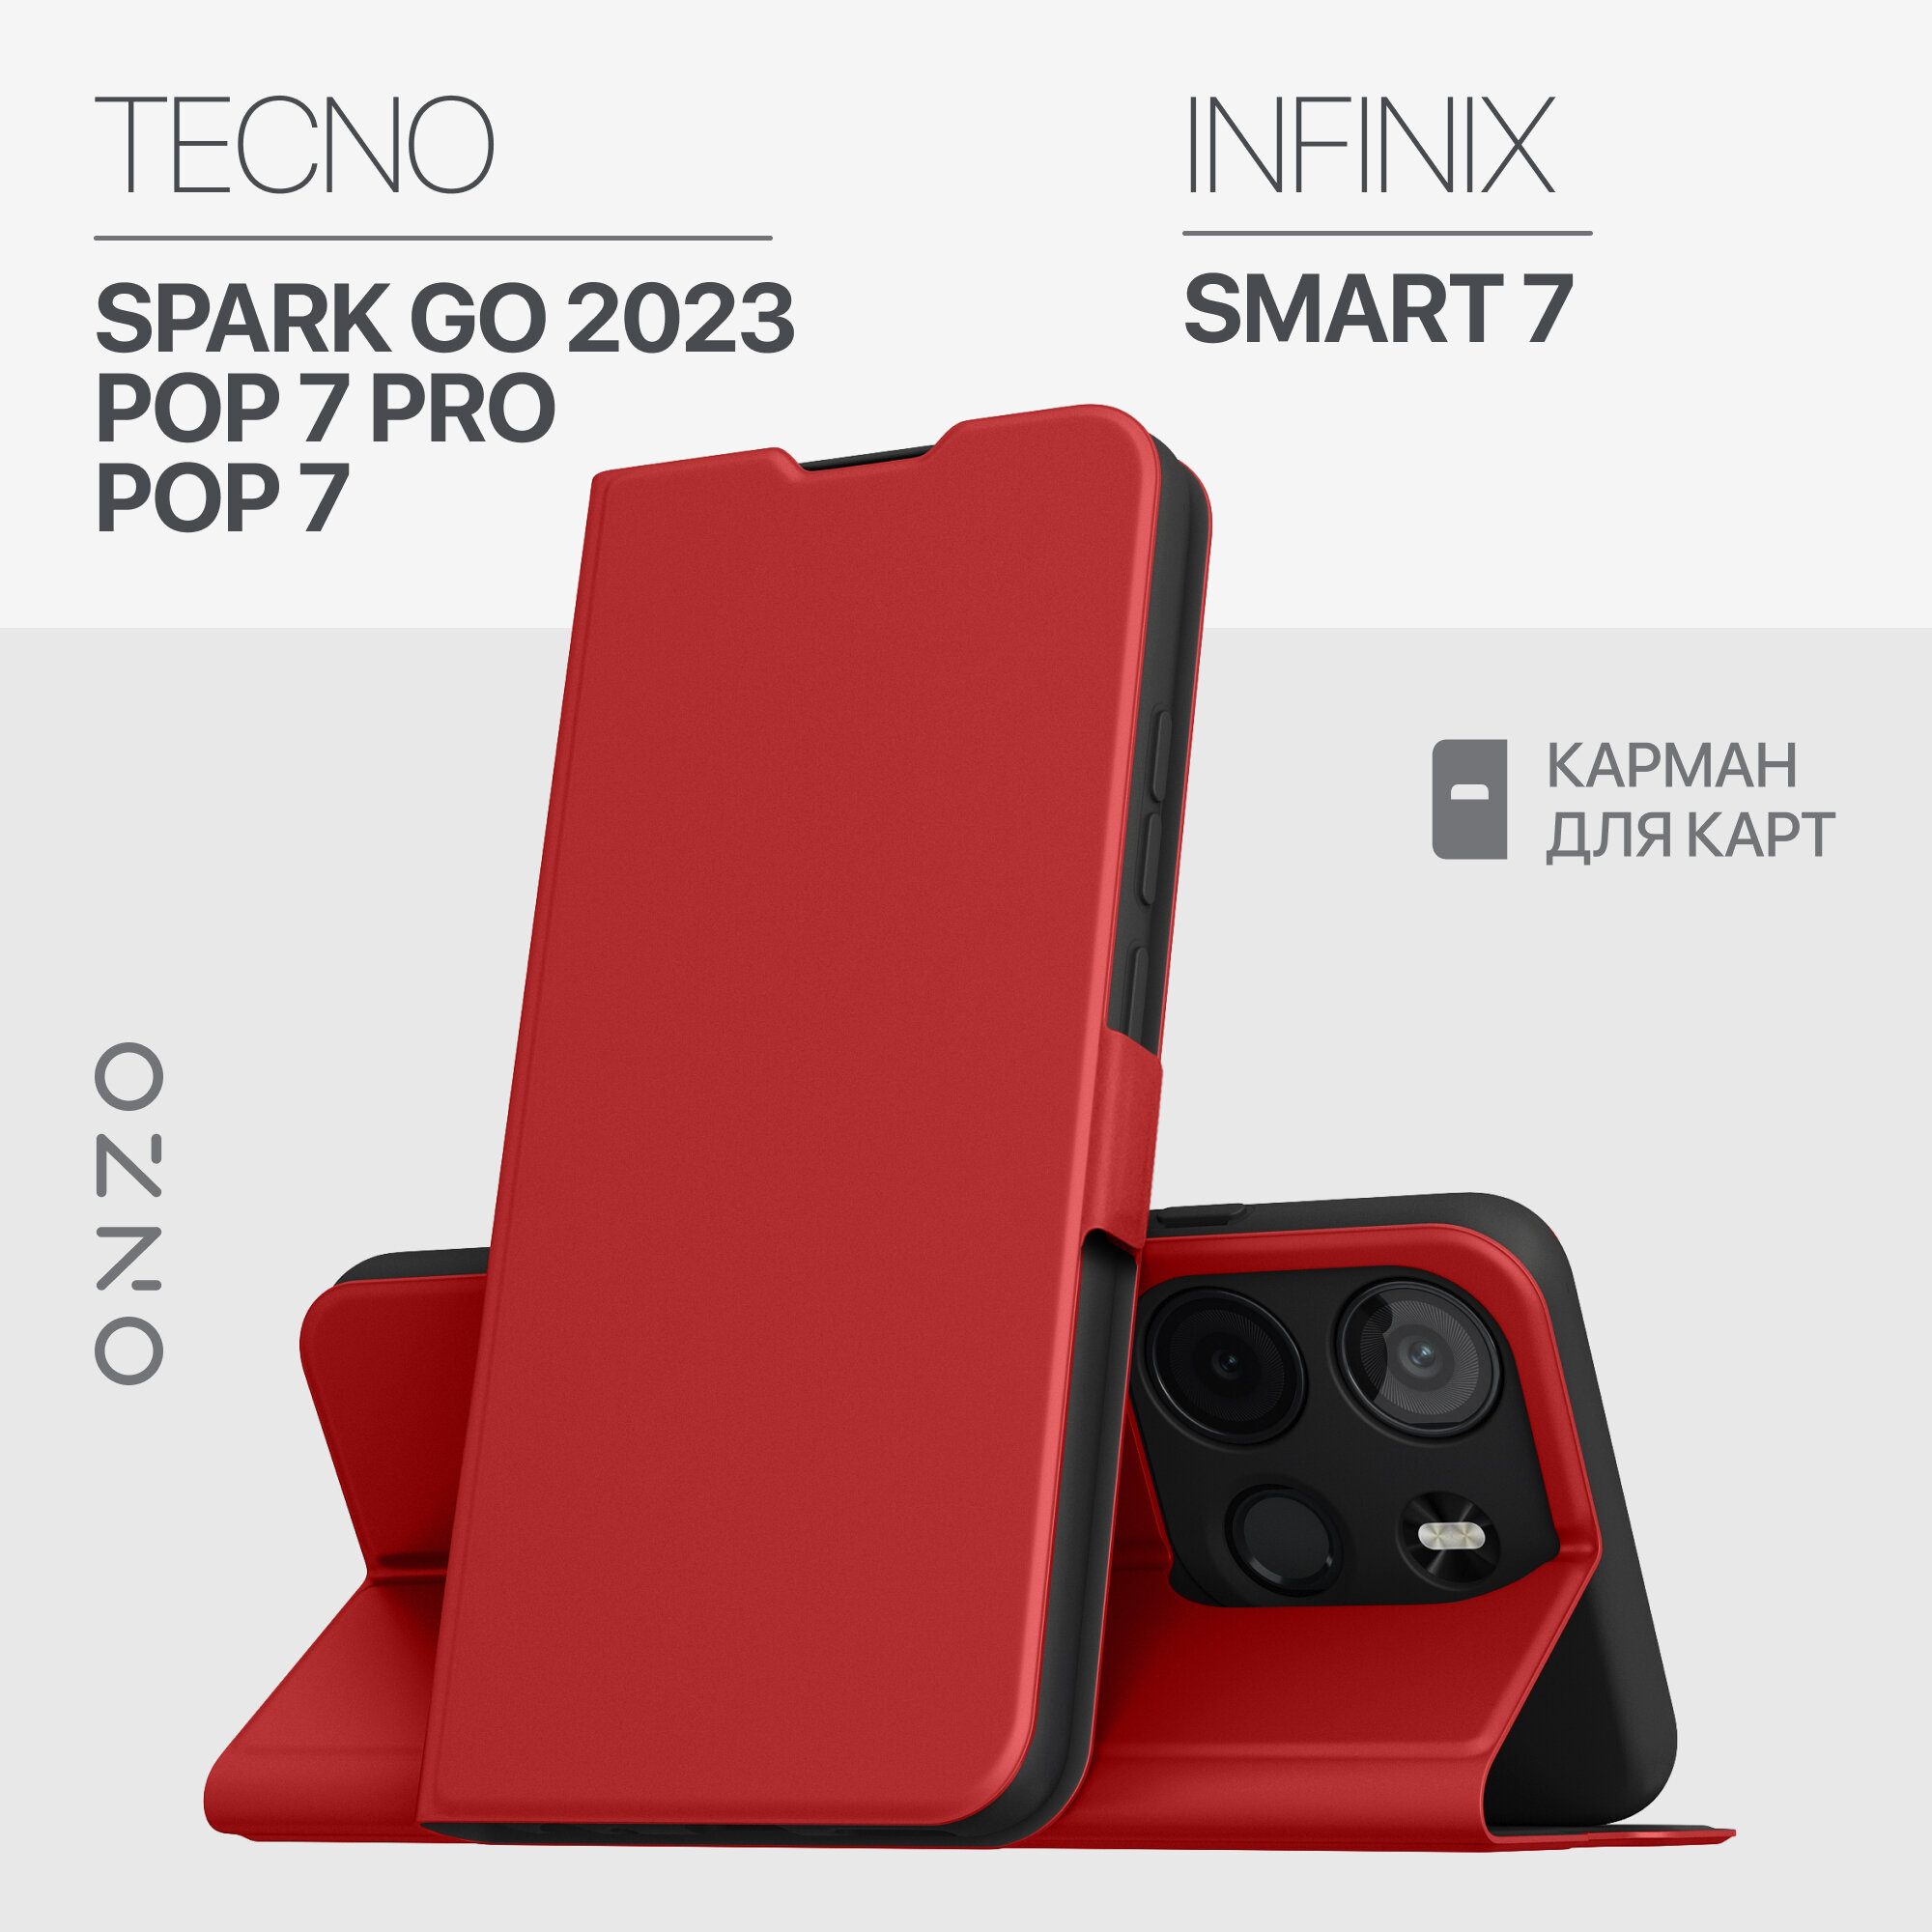 Чехол-книжка ONZO "CLIPS" для Tecno Spark Go 2023 / Pop 7 / Pop 7 Pro / Infinix Smart 7, с карманом, красный